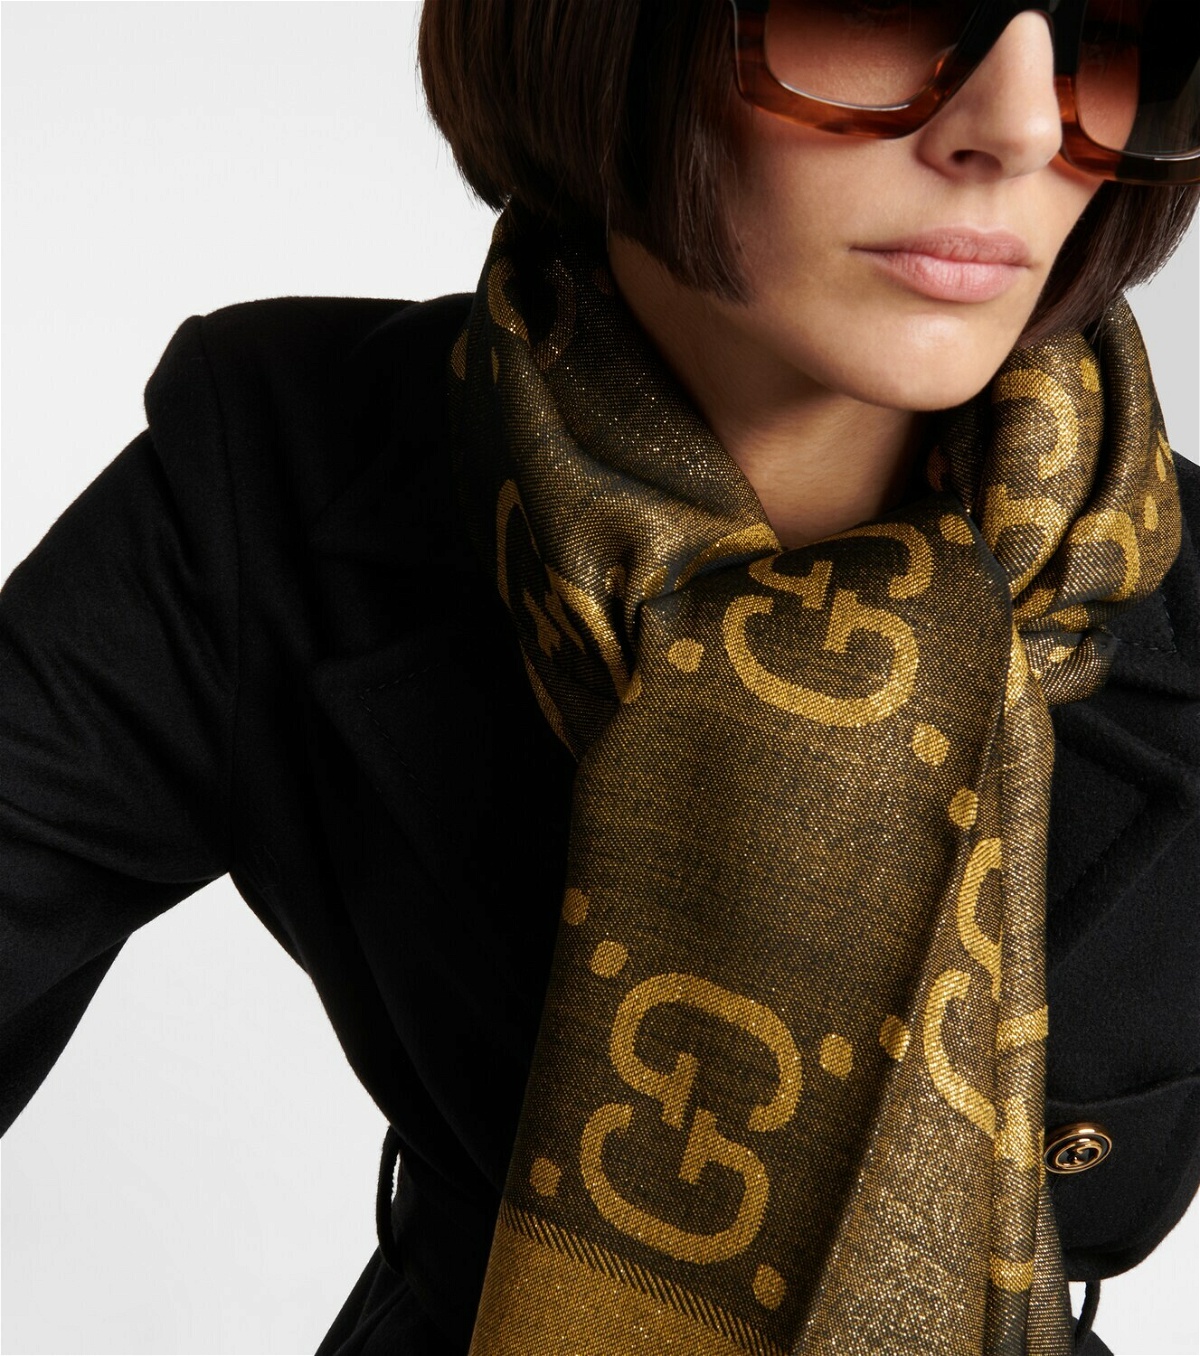 GG cashmere scarf in dark brown and beige